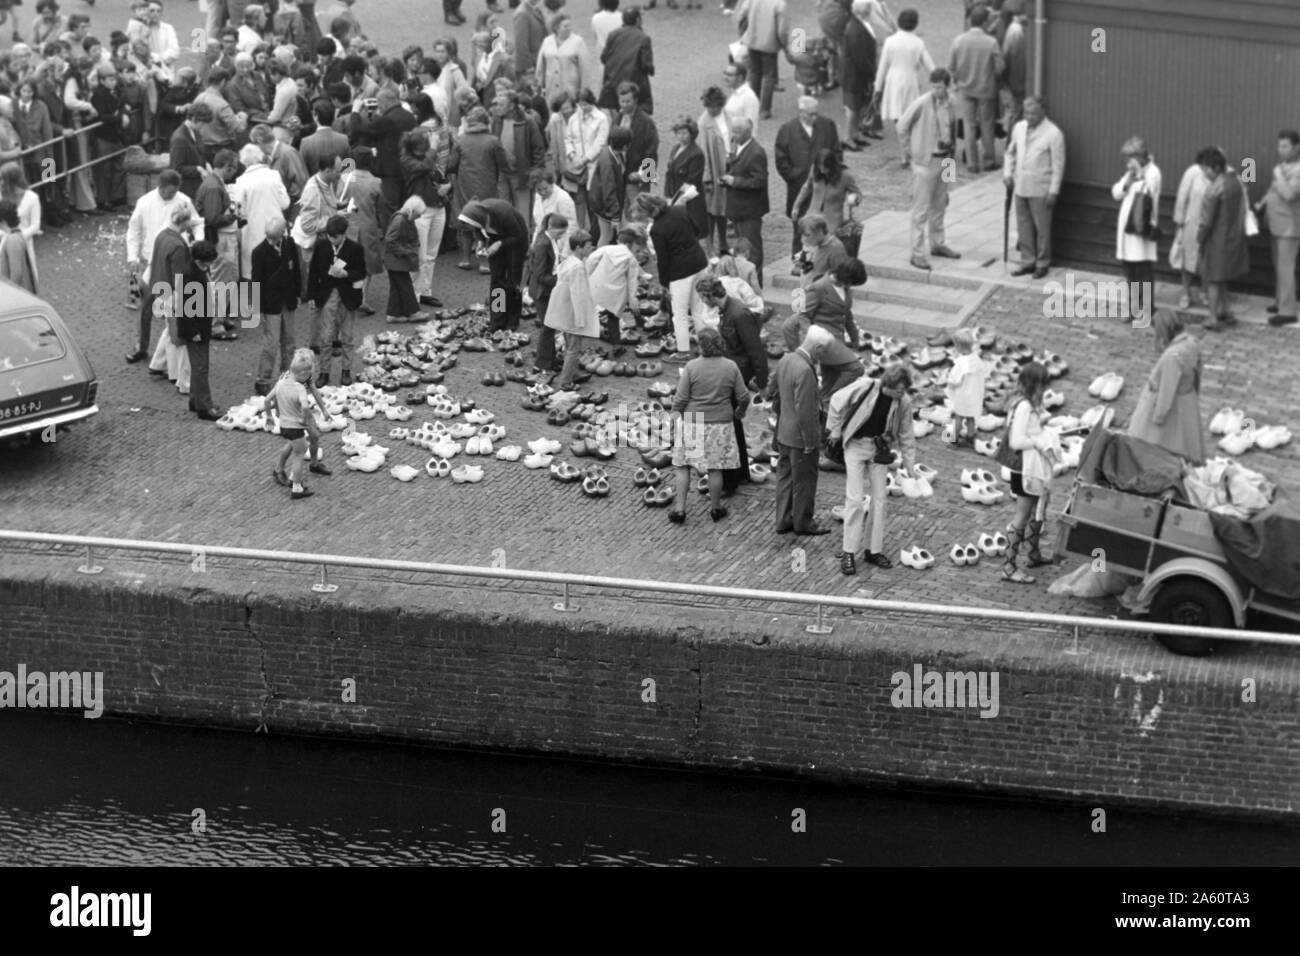 Menschen bei einem verkauf von den traditionellen Klompen, Alkmaar Niederlande 1971. People at a selling of the traditional Klomps, Alkmaar Netherlands 1971. Stock Photo